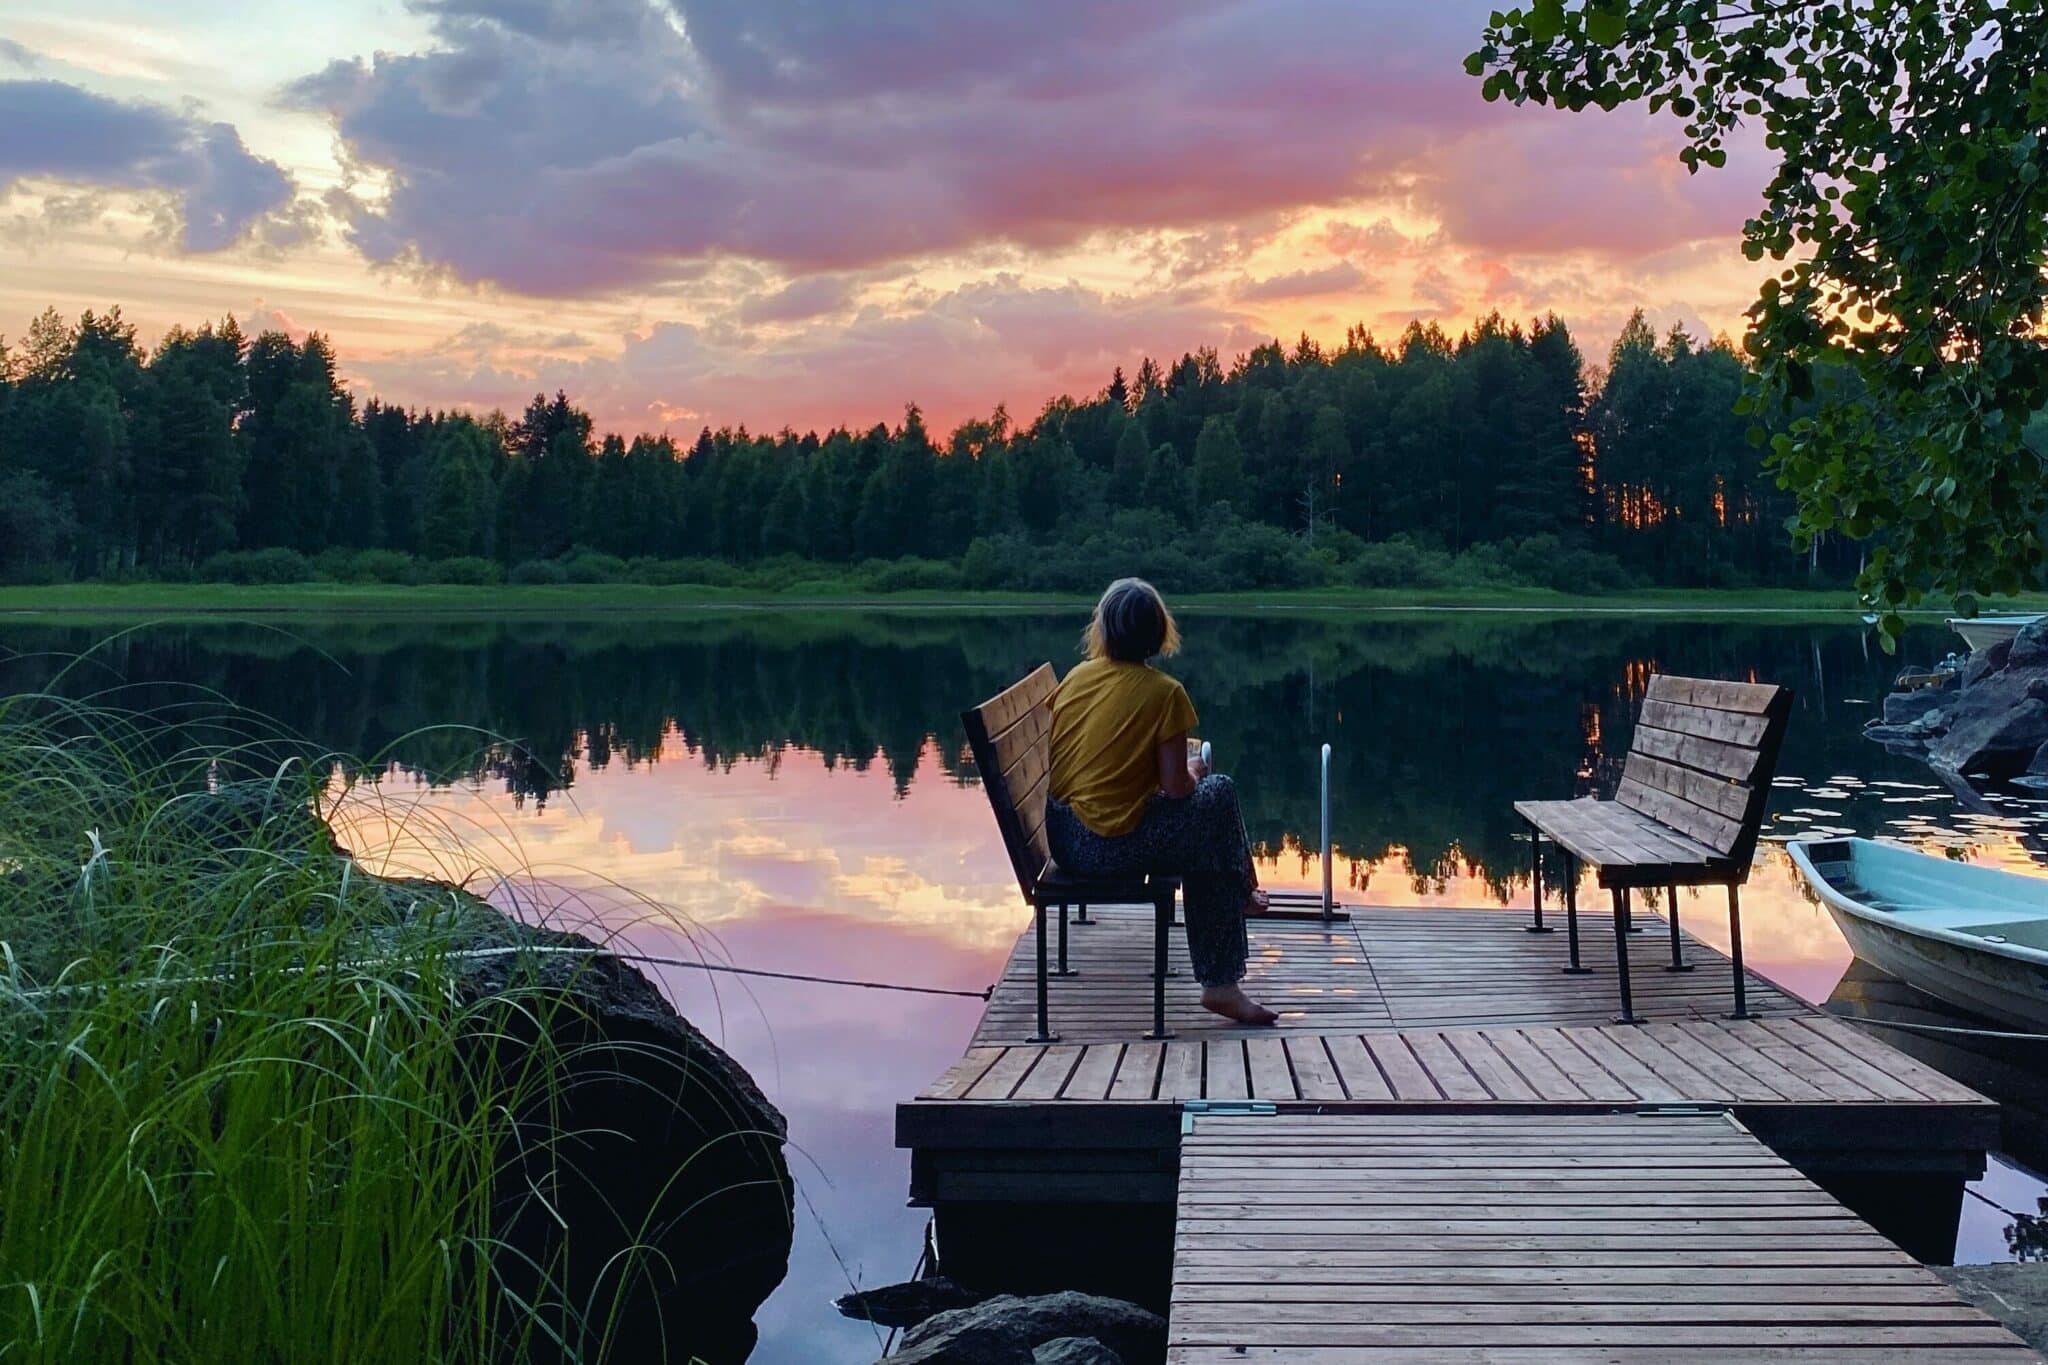 La foto muestra a una mujer sentada en un banco en un embarcadero. Al fondo se ve un lago y sobre él una puesta de sol de color rosa.